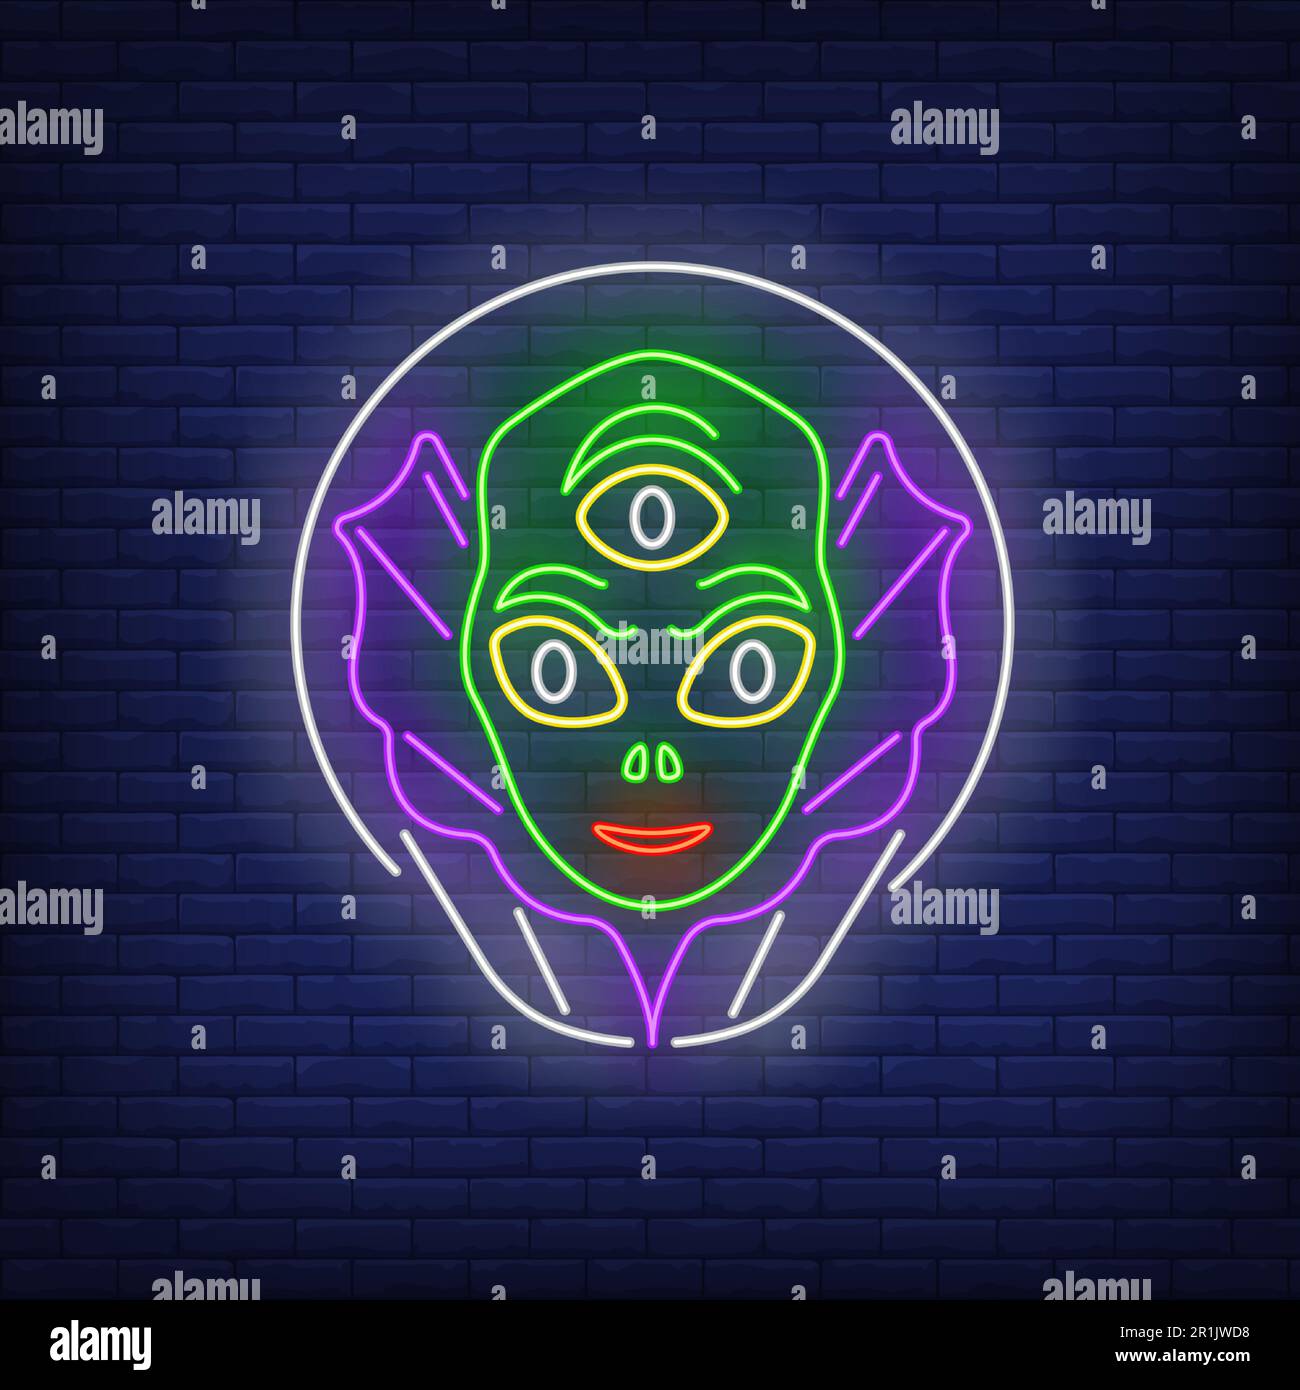 Alien head in glass helmet neon sign Stock Vector